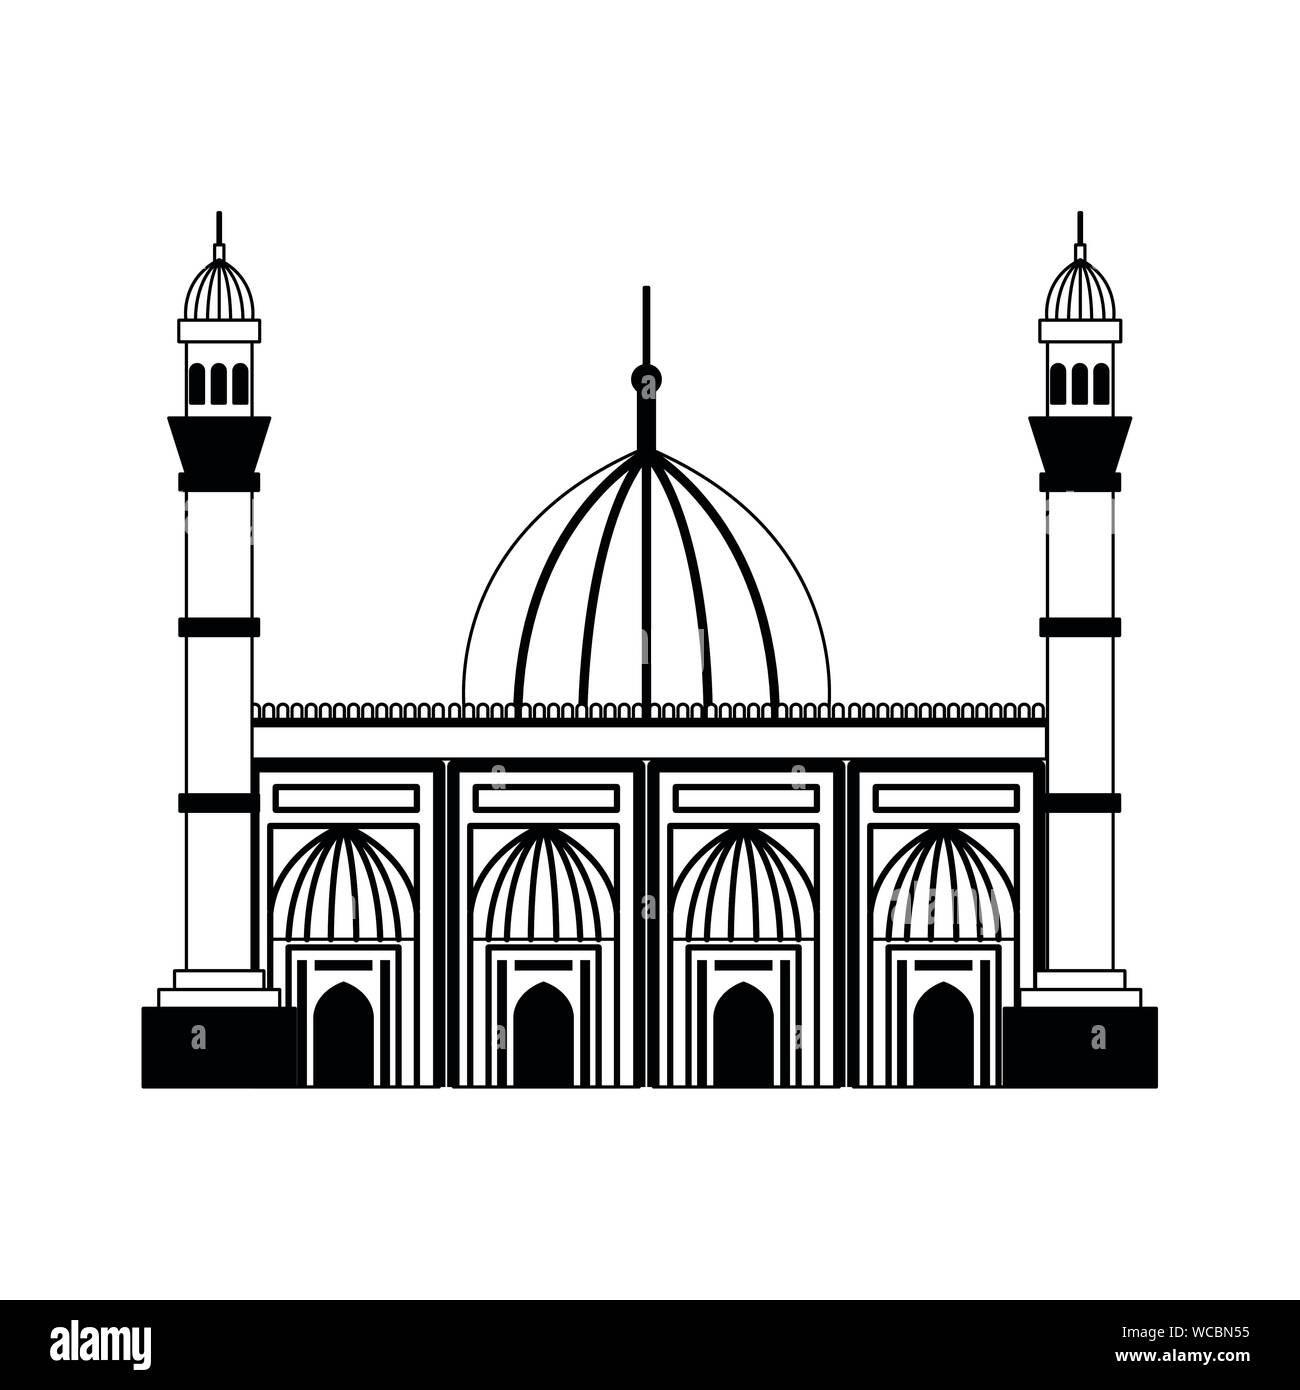 Badshahi Mosque Stock Illustrations – 87 Badshahi Mosque Stock  Illustrations, Vectors & Clipart - Dreamstime